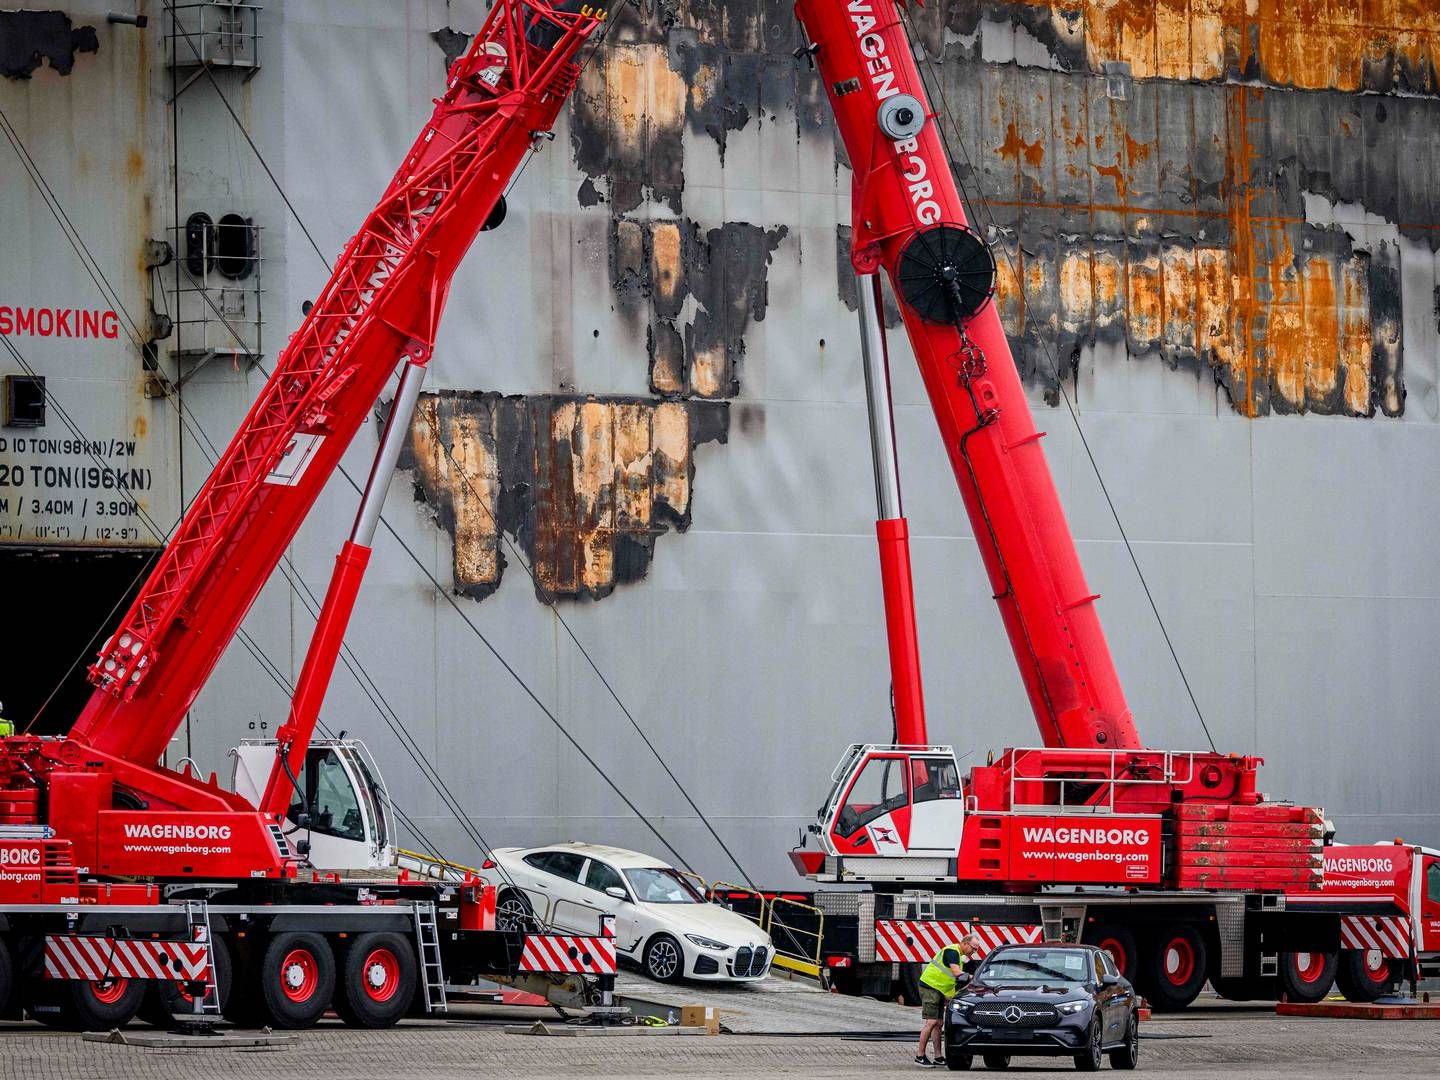 Biler køres af Fremantle Highway, som for nylig brød i brand. | Foto: Emiel Muijderman/AFP/Ritzau Scanpix